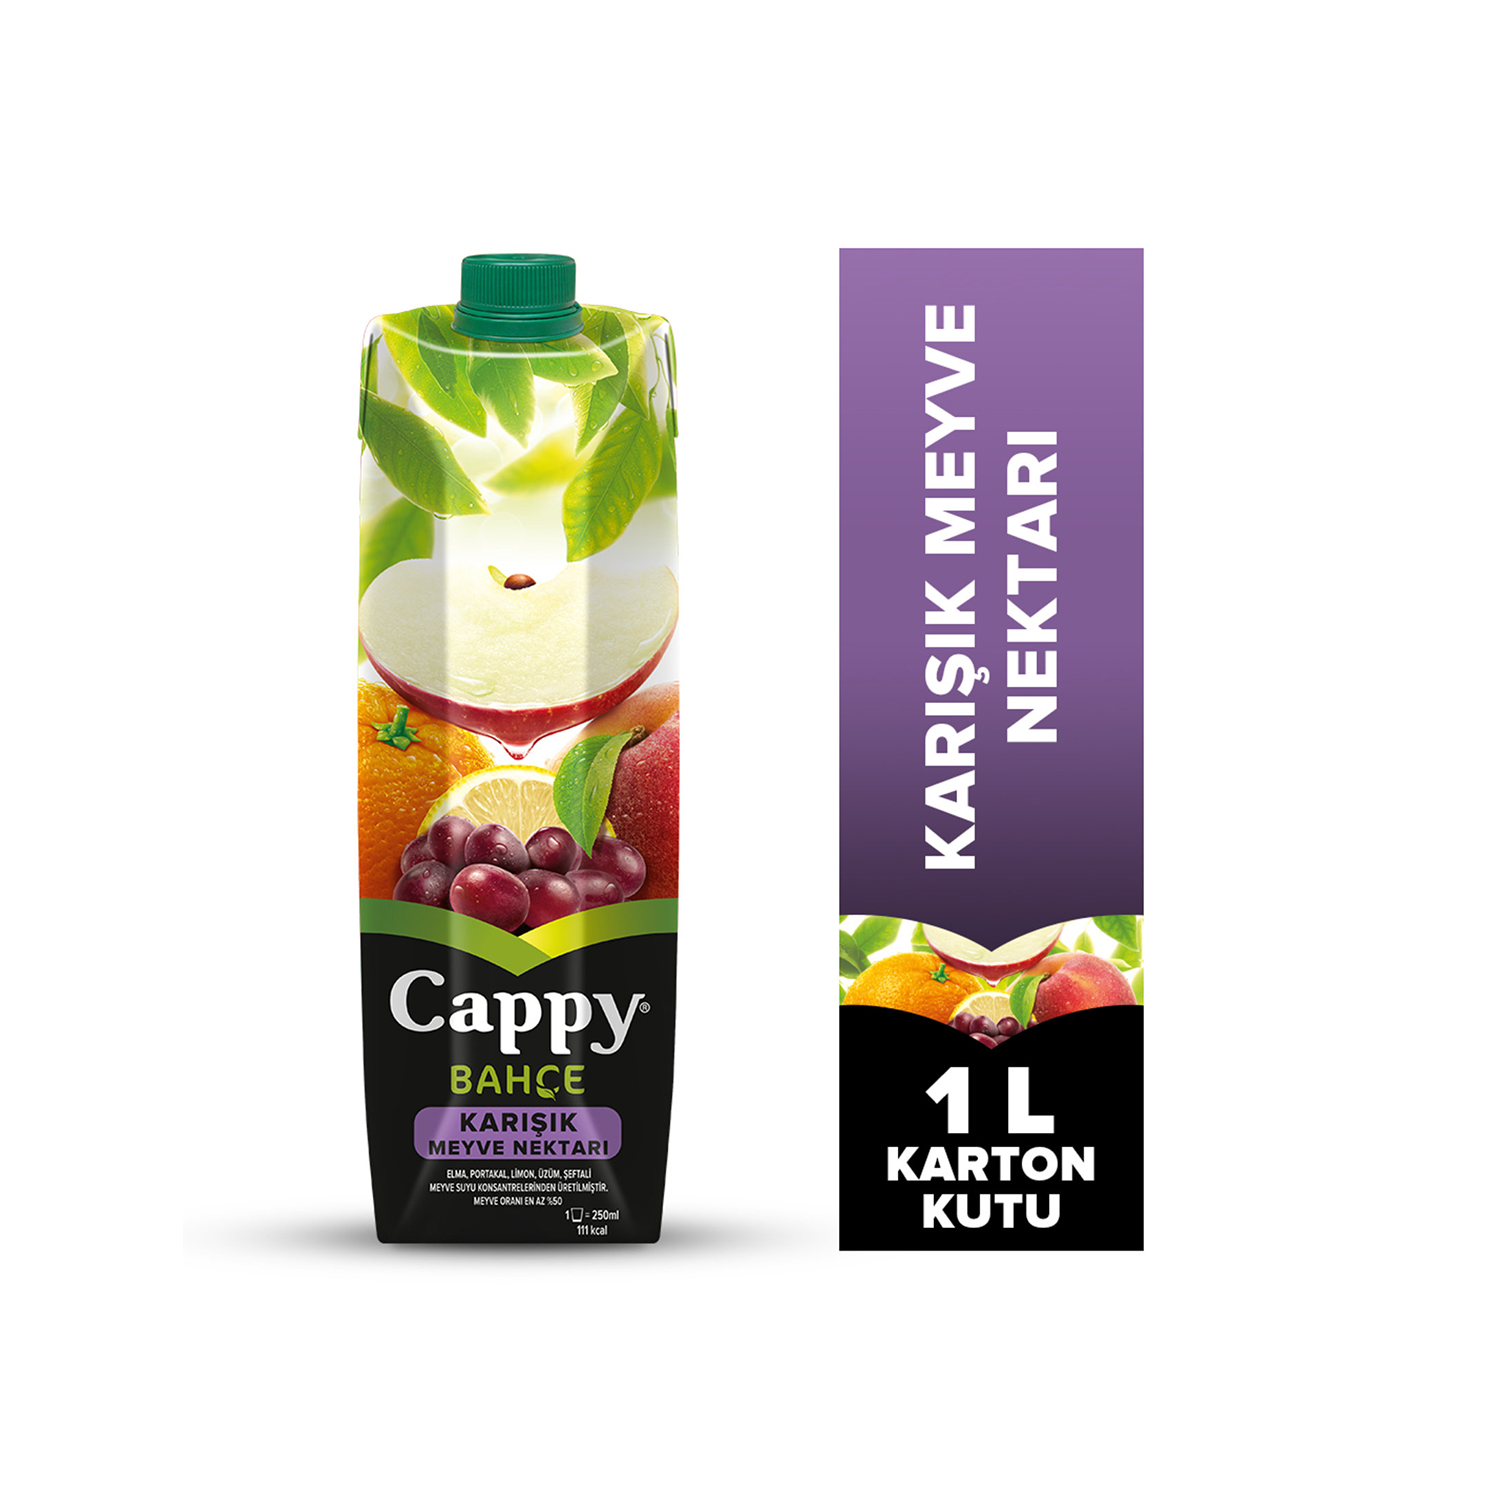 Cappy Bahçe Karışık Meyve Nektarı Karton Kutu 1 L